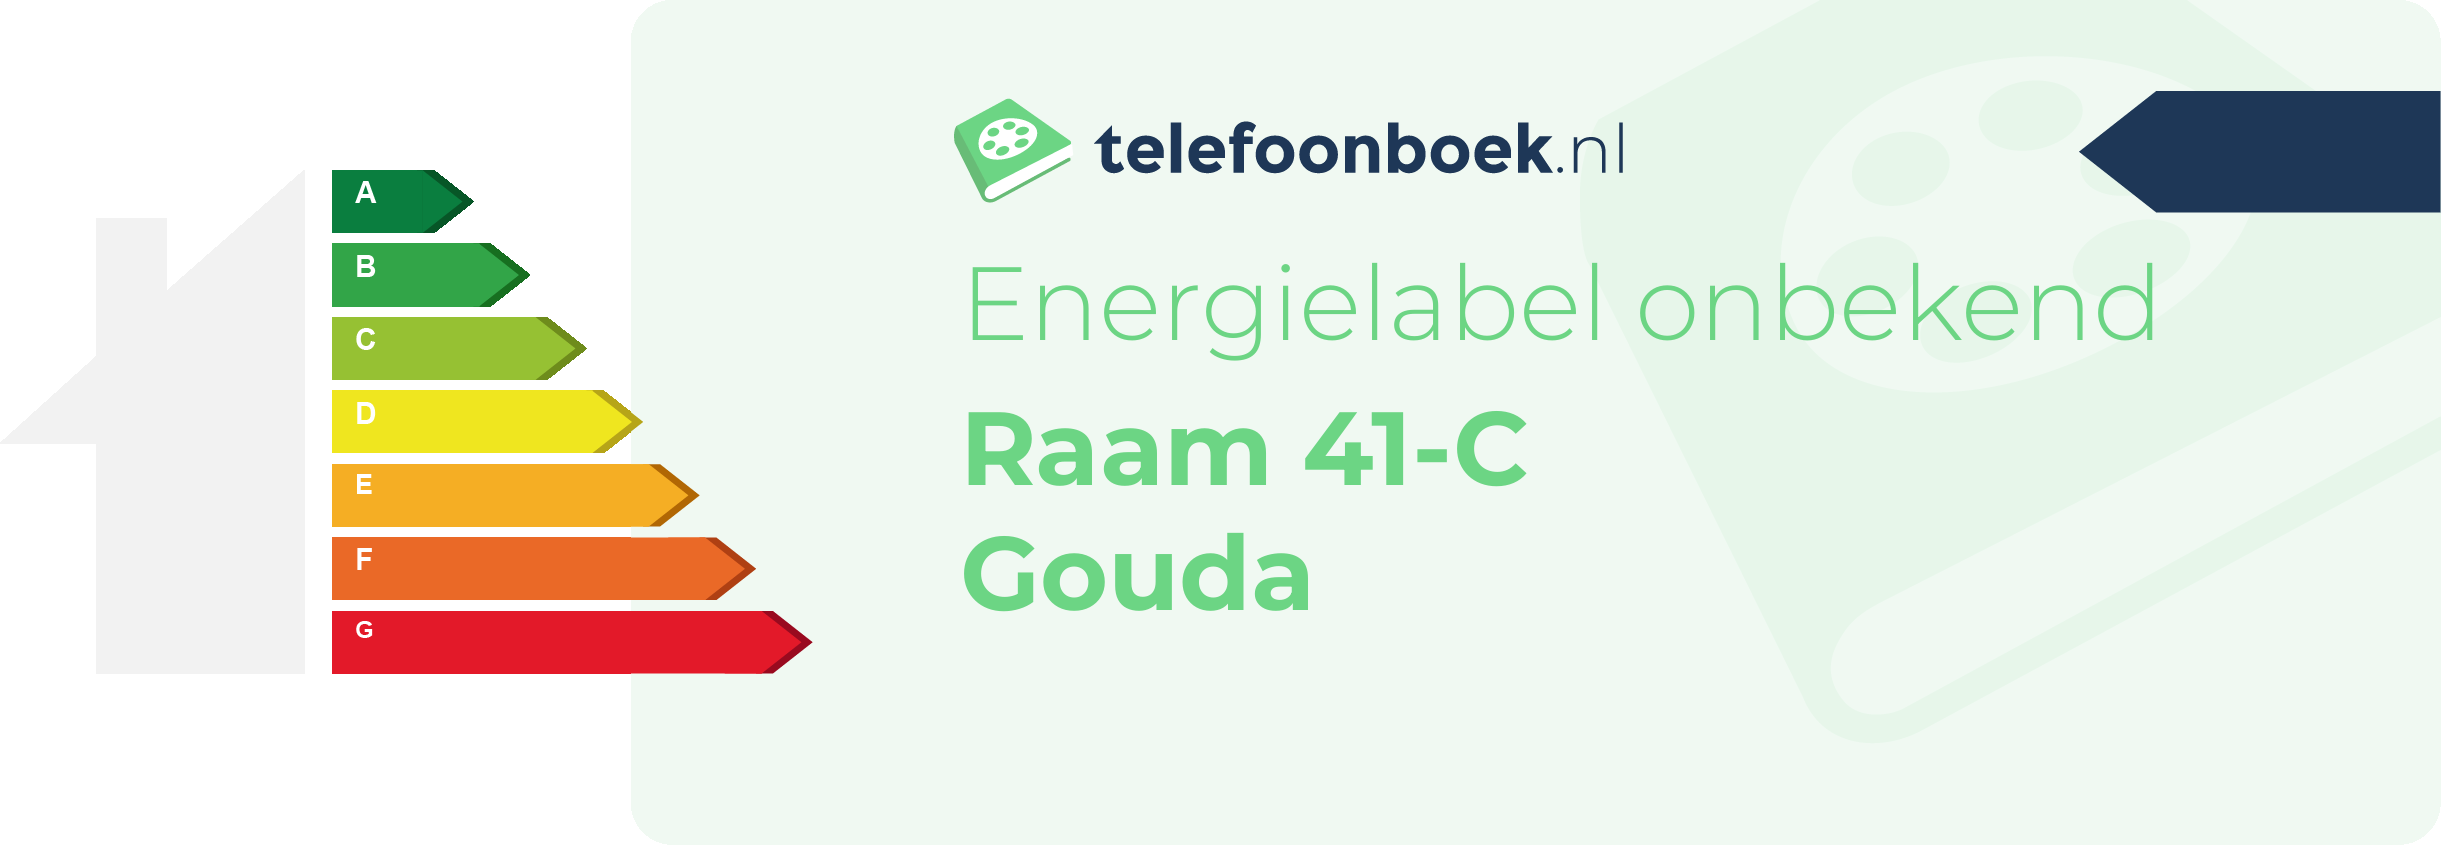 Energielabel Raam 41-C Gouda